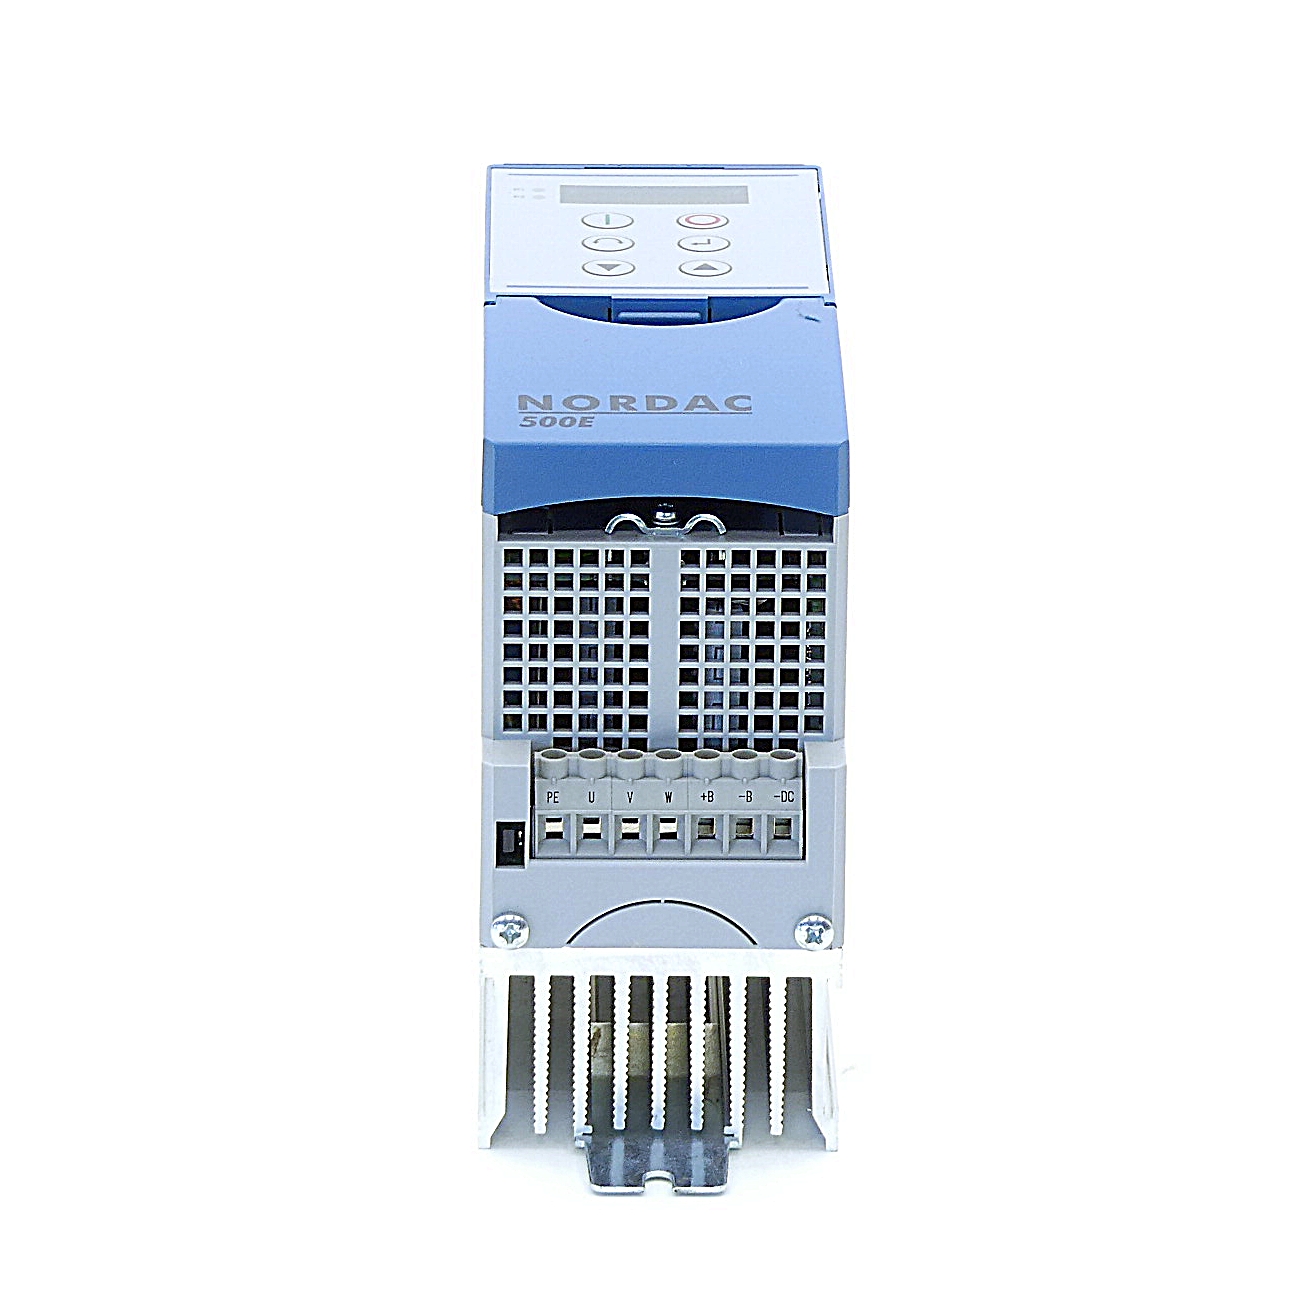 Frequency converter NORDAC500E 